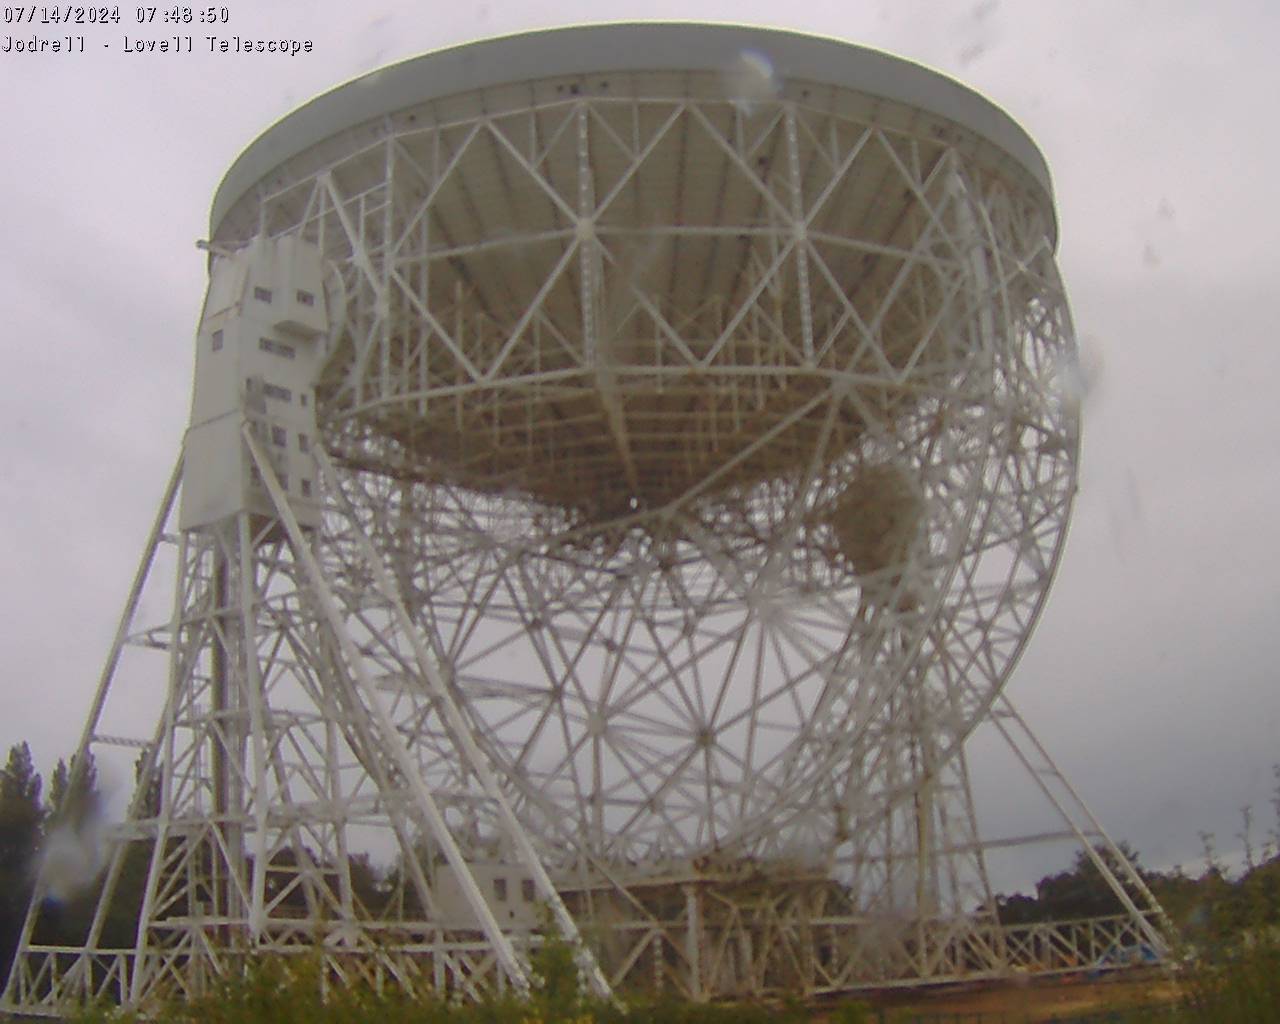 Jodrell Bank Observatory Sab. 07:49